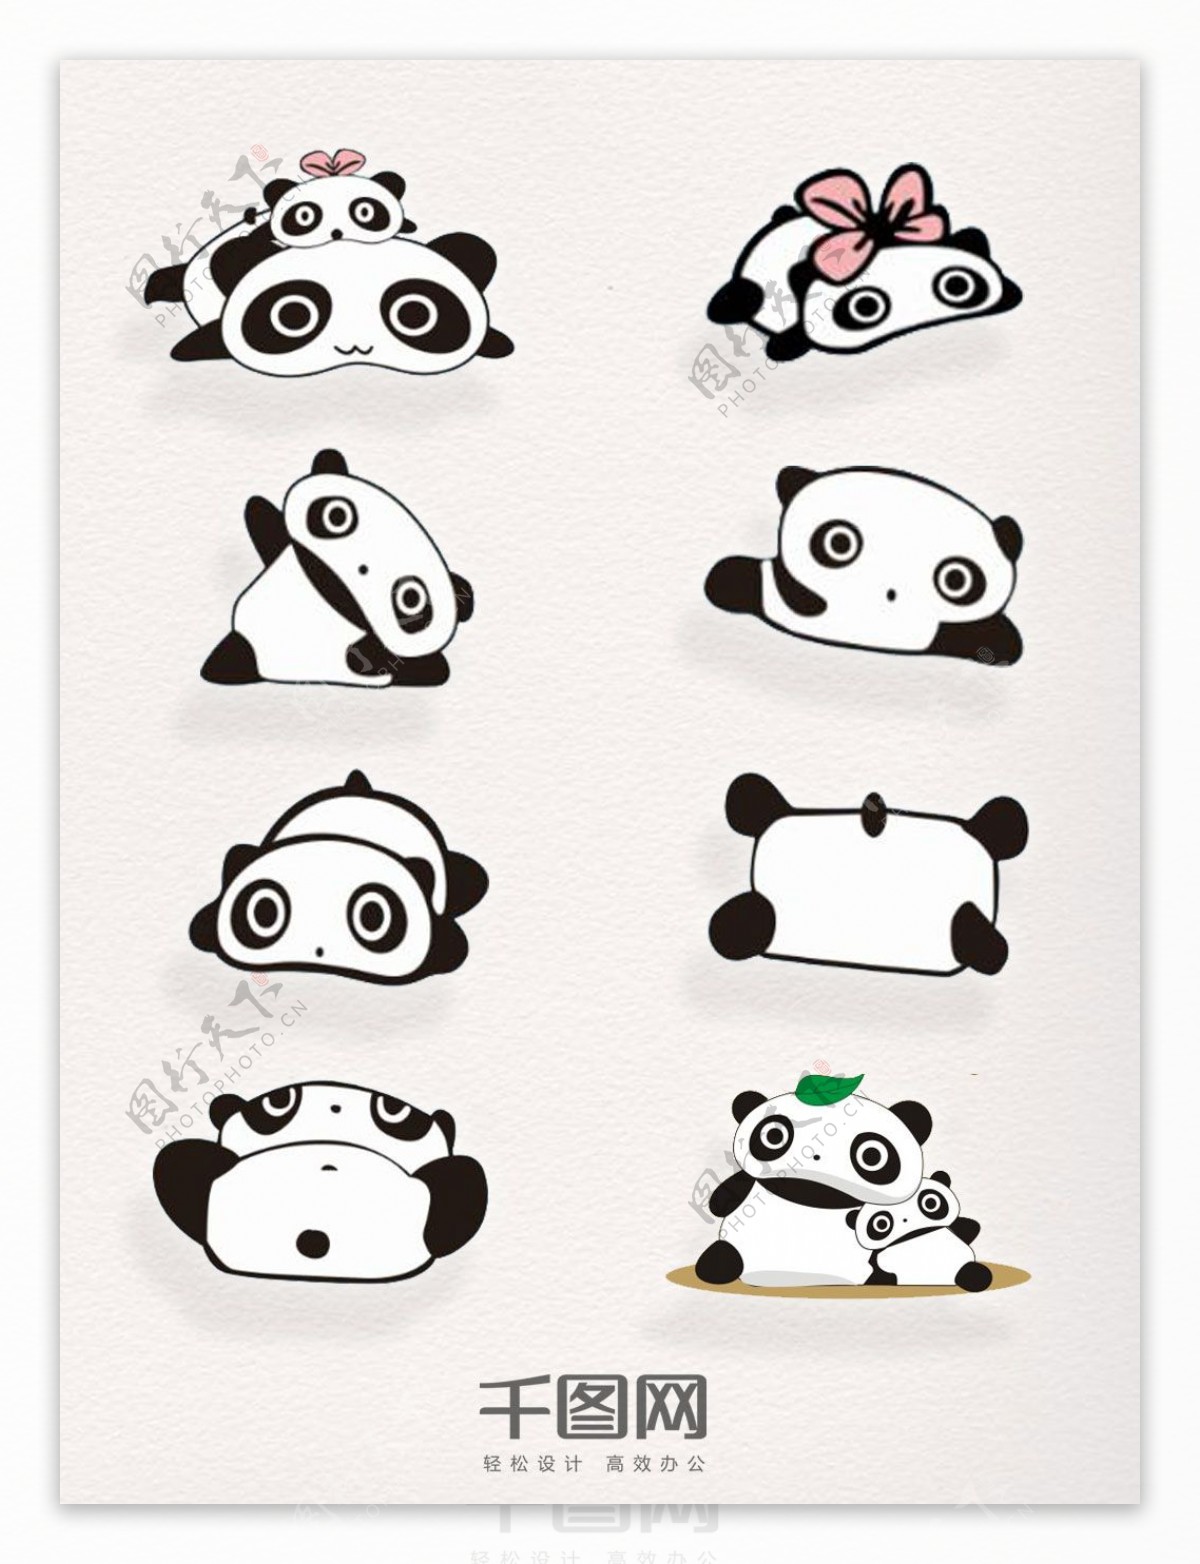 卡通熊猫元素矢量装饰图案集合